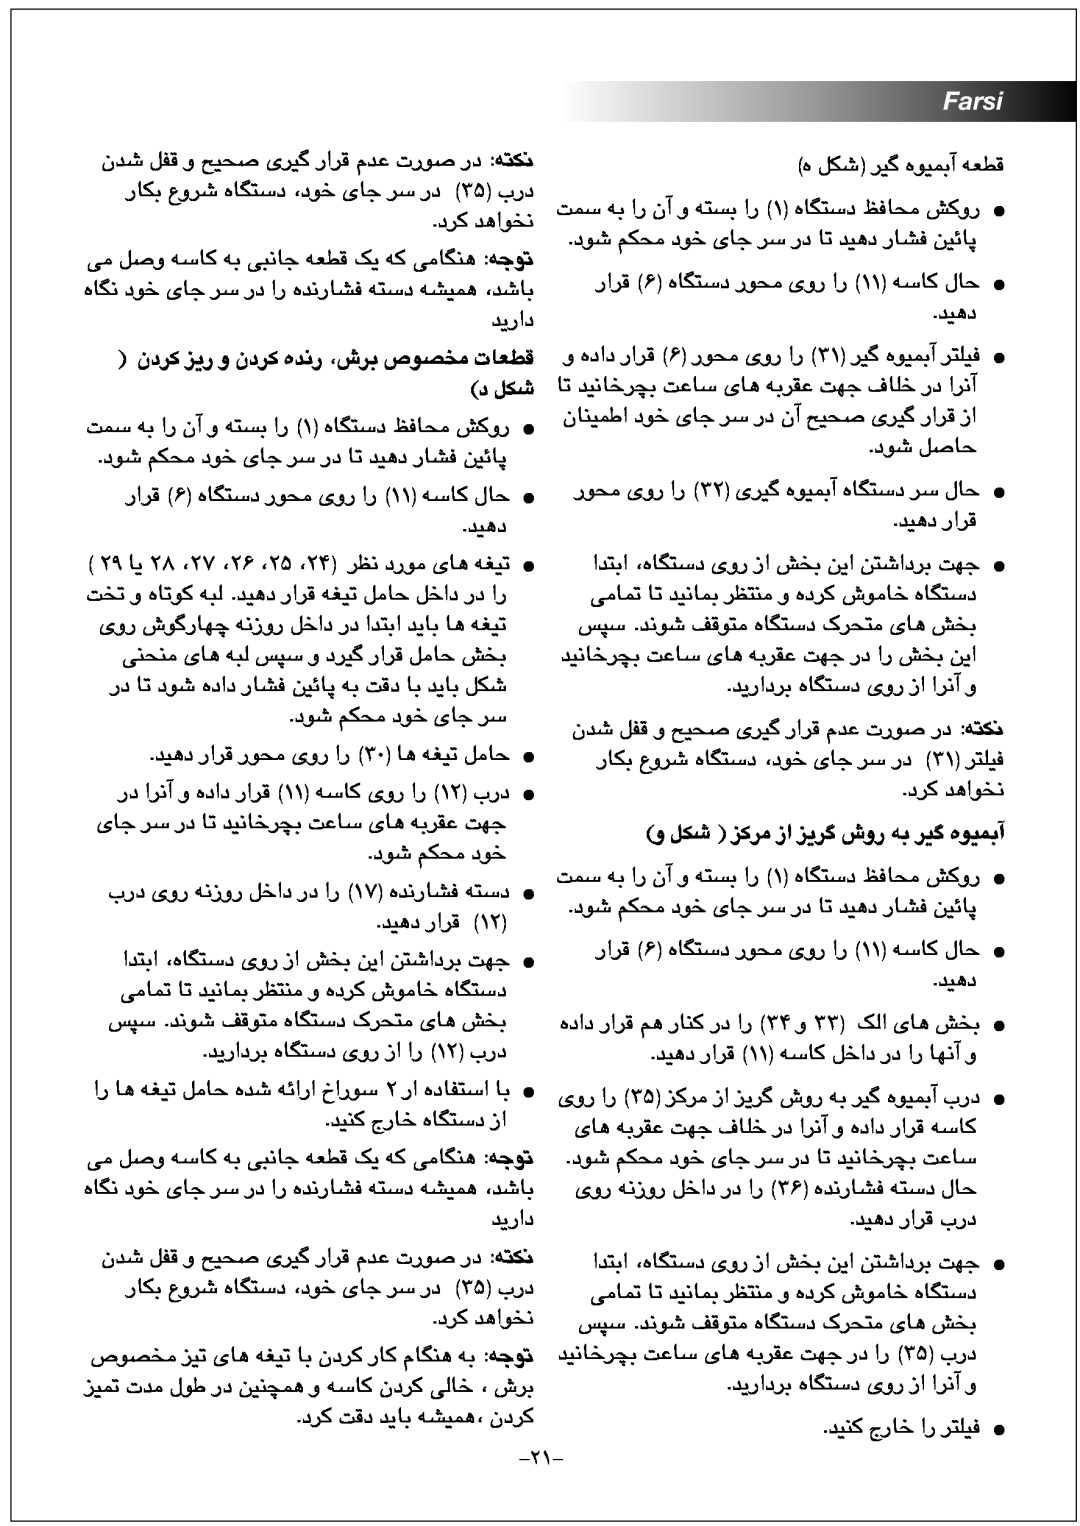 Black & Decker FX1000 manual ﻥﺩﺮﮐ ﺰﯾﺭ ﻭ ﻥﺩﺮﮐ ﻩﺪﻧﺭ ،ﺵﺮﺑ ﺹﻮﺼﺨﻣ ﺕﺎﻌﻄﻗ ﺩ ﻞﮑﺷ, Farsi, ﻭ ﻞﮑﺷ ﺰﮐﺮﻣ ﺯﺍ ﺰﯾﺮﮔ ﺵﻭﺭ ﻪﺑ ﺮﯿﮔ ﻩﻮﯿﻤﺑﺁ 